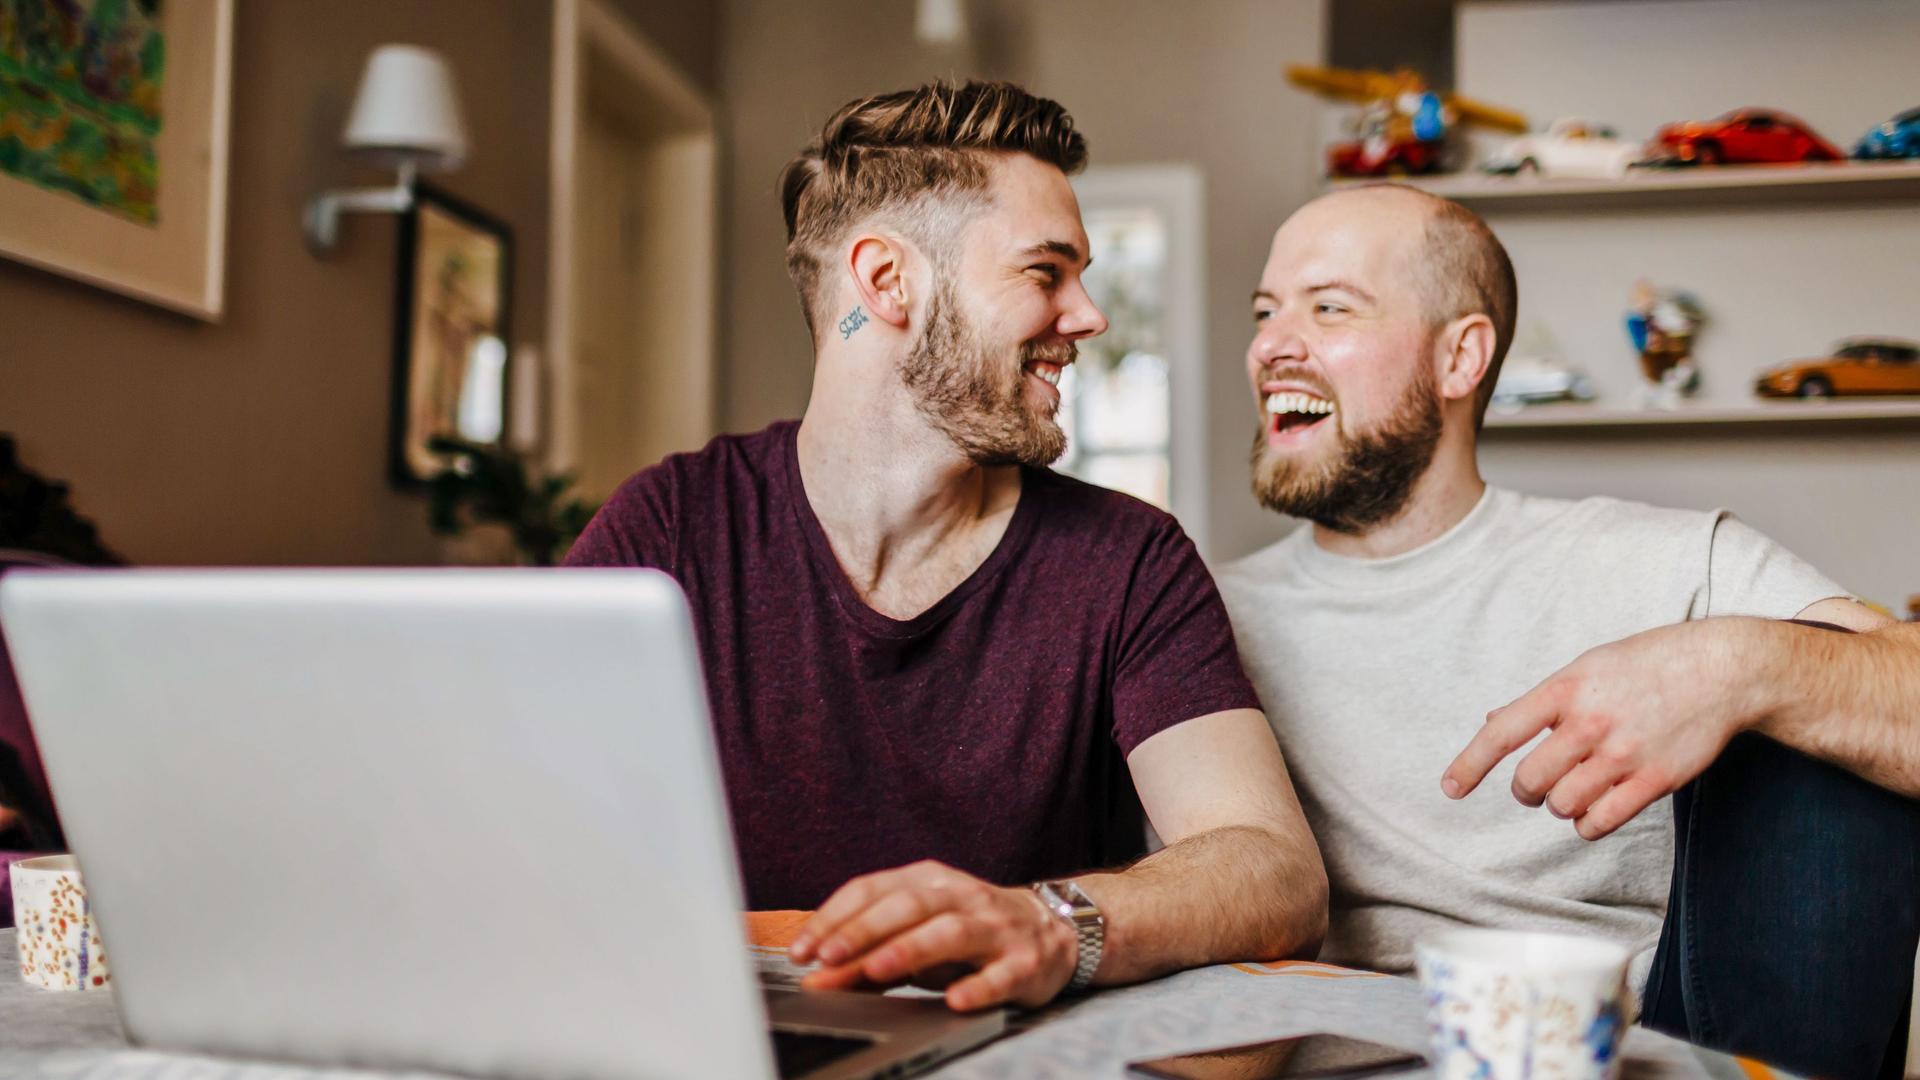 Zwei junge Männer sitzen vor einem Laptop in einer Wohnung. Sie schauen sich an und lachen ausgelassen.